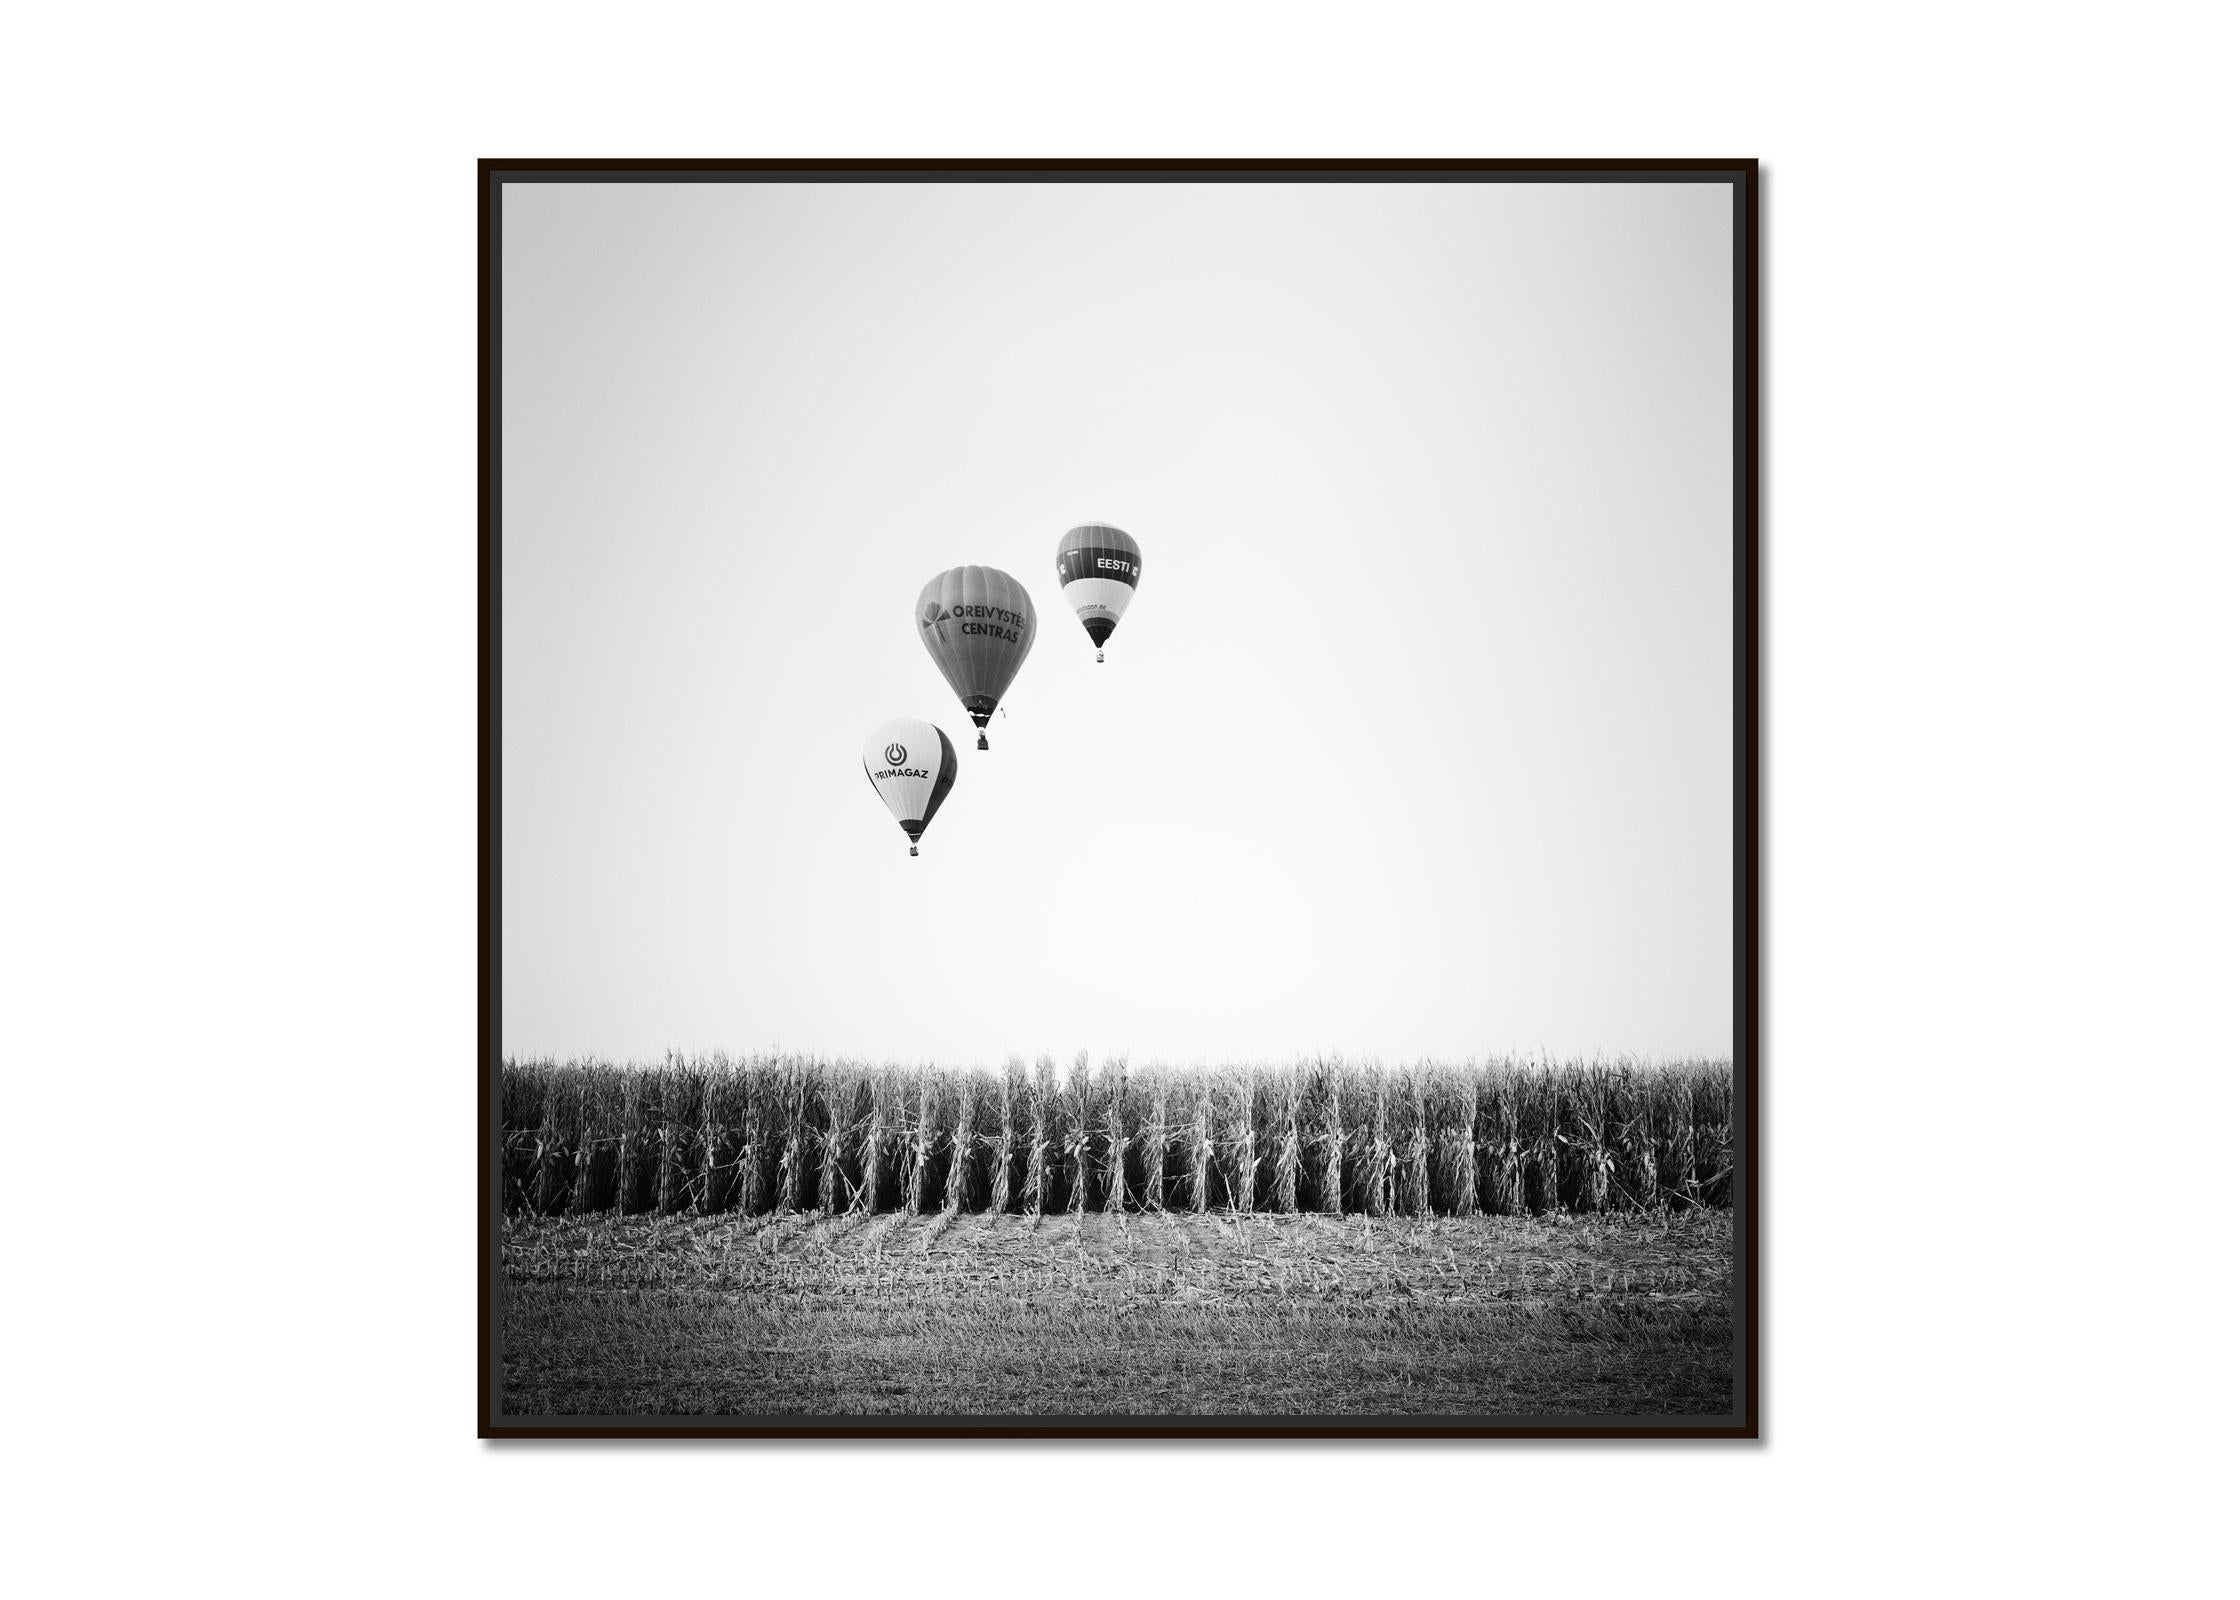 Photo du ballon d'aviation, Cornfield, championnat, Autriche, paysage noir et blanc - Photograph de Gerald Berghammer